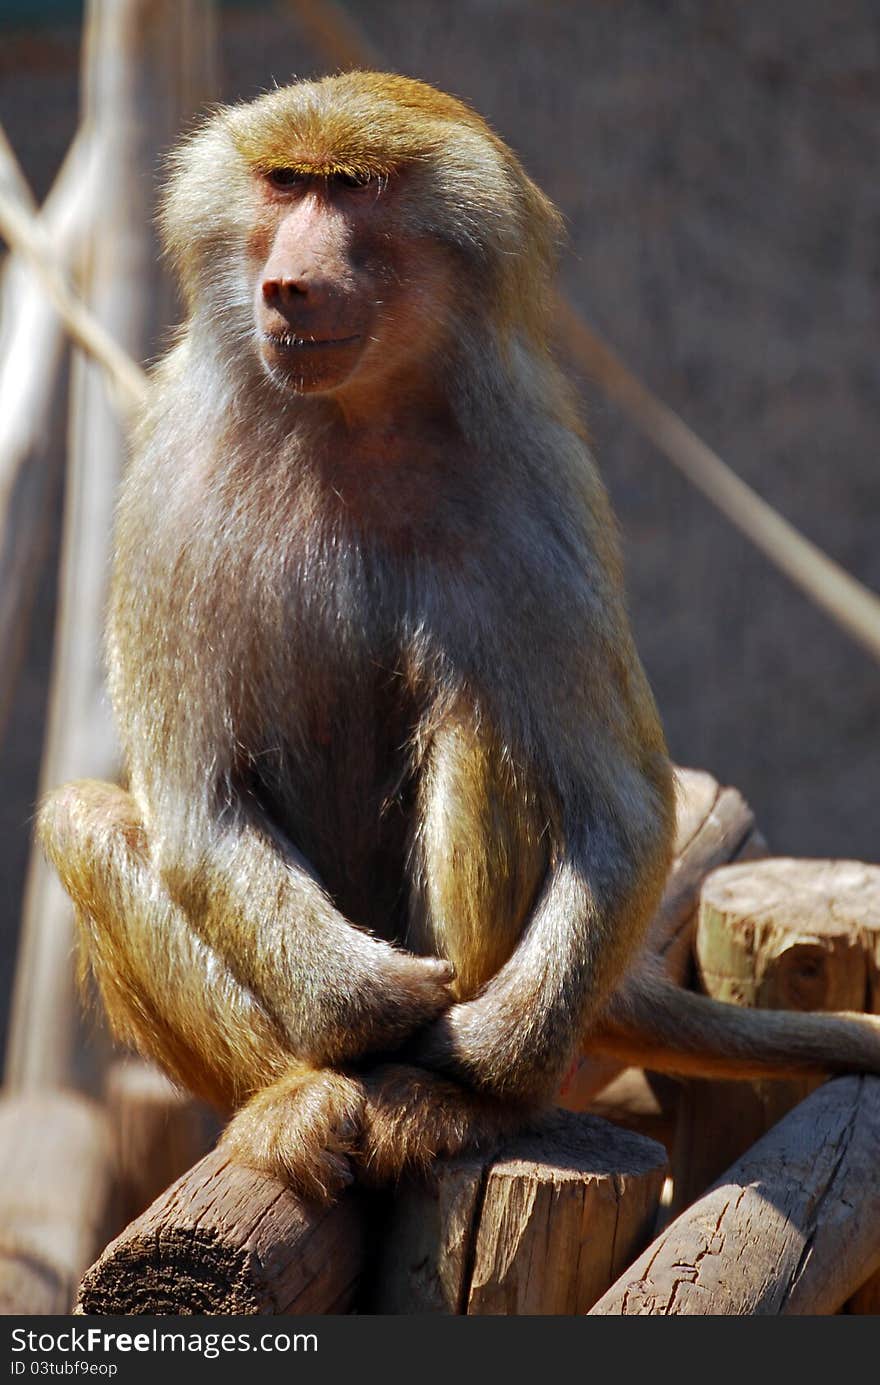 Baboon monkey at Santiago de Chile zoo park